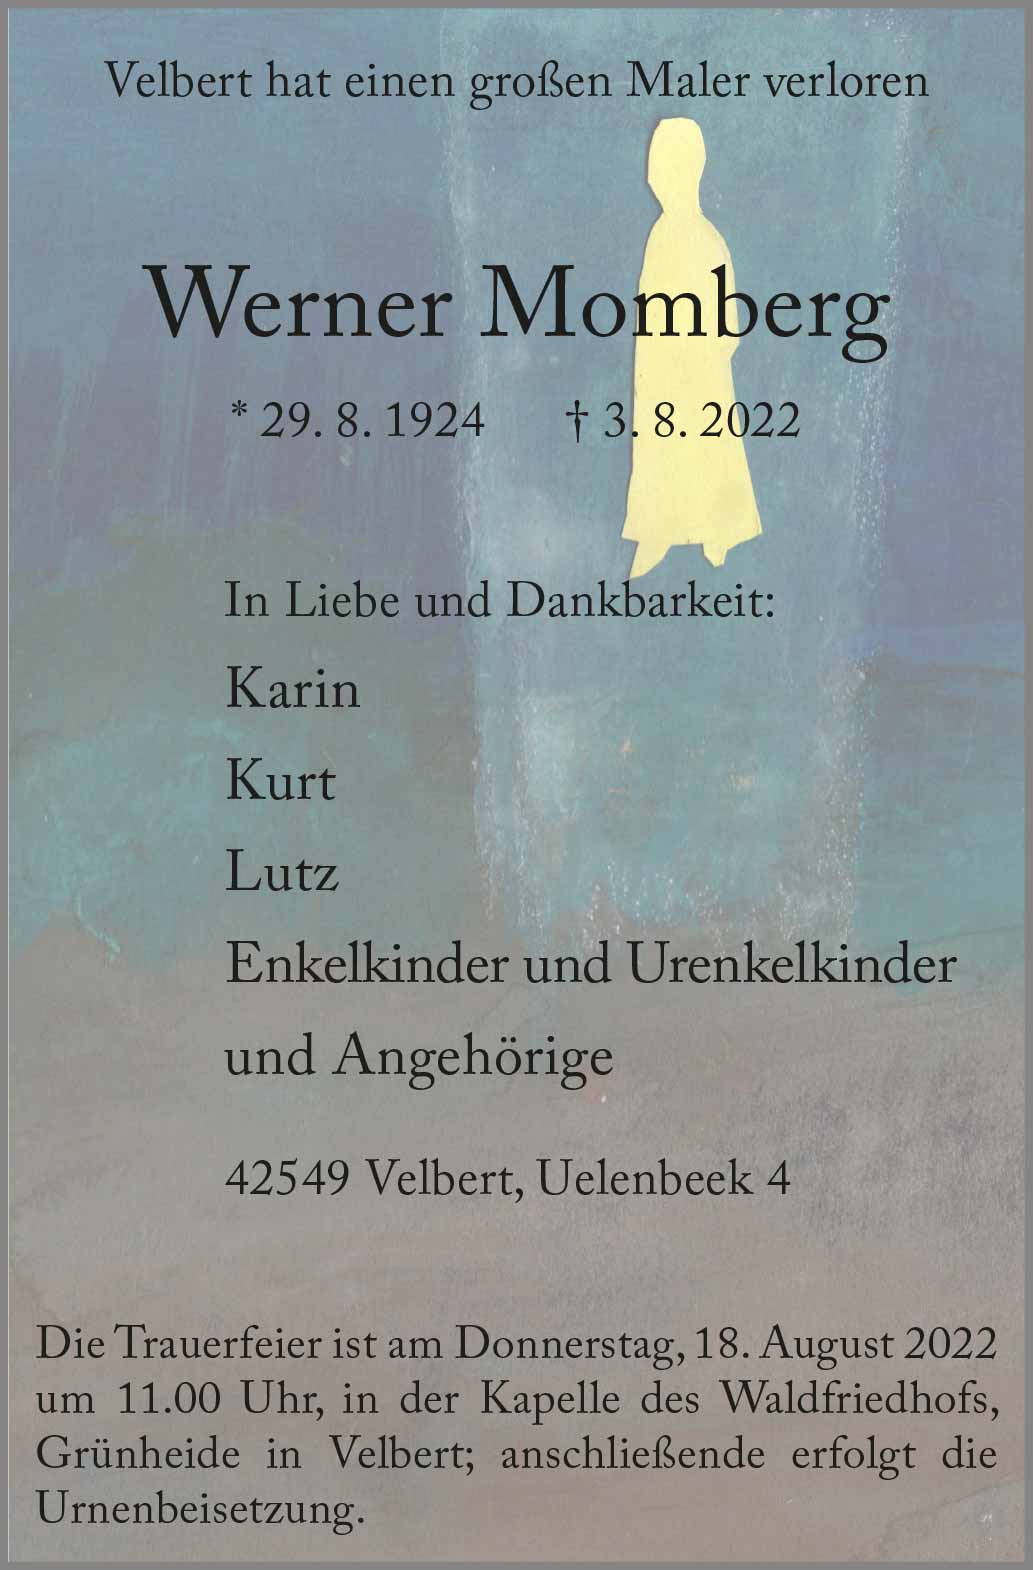 Werner Momberg † 3. 8. 2022